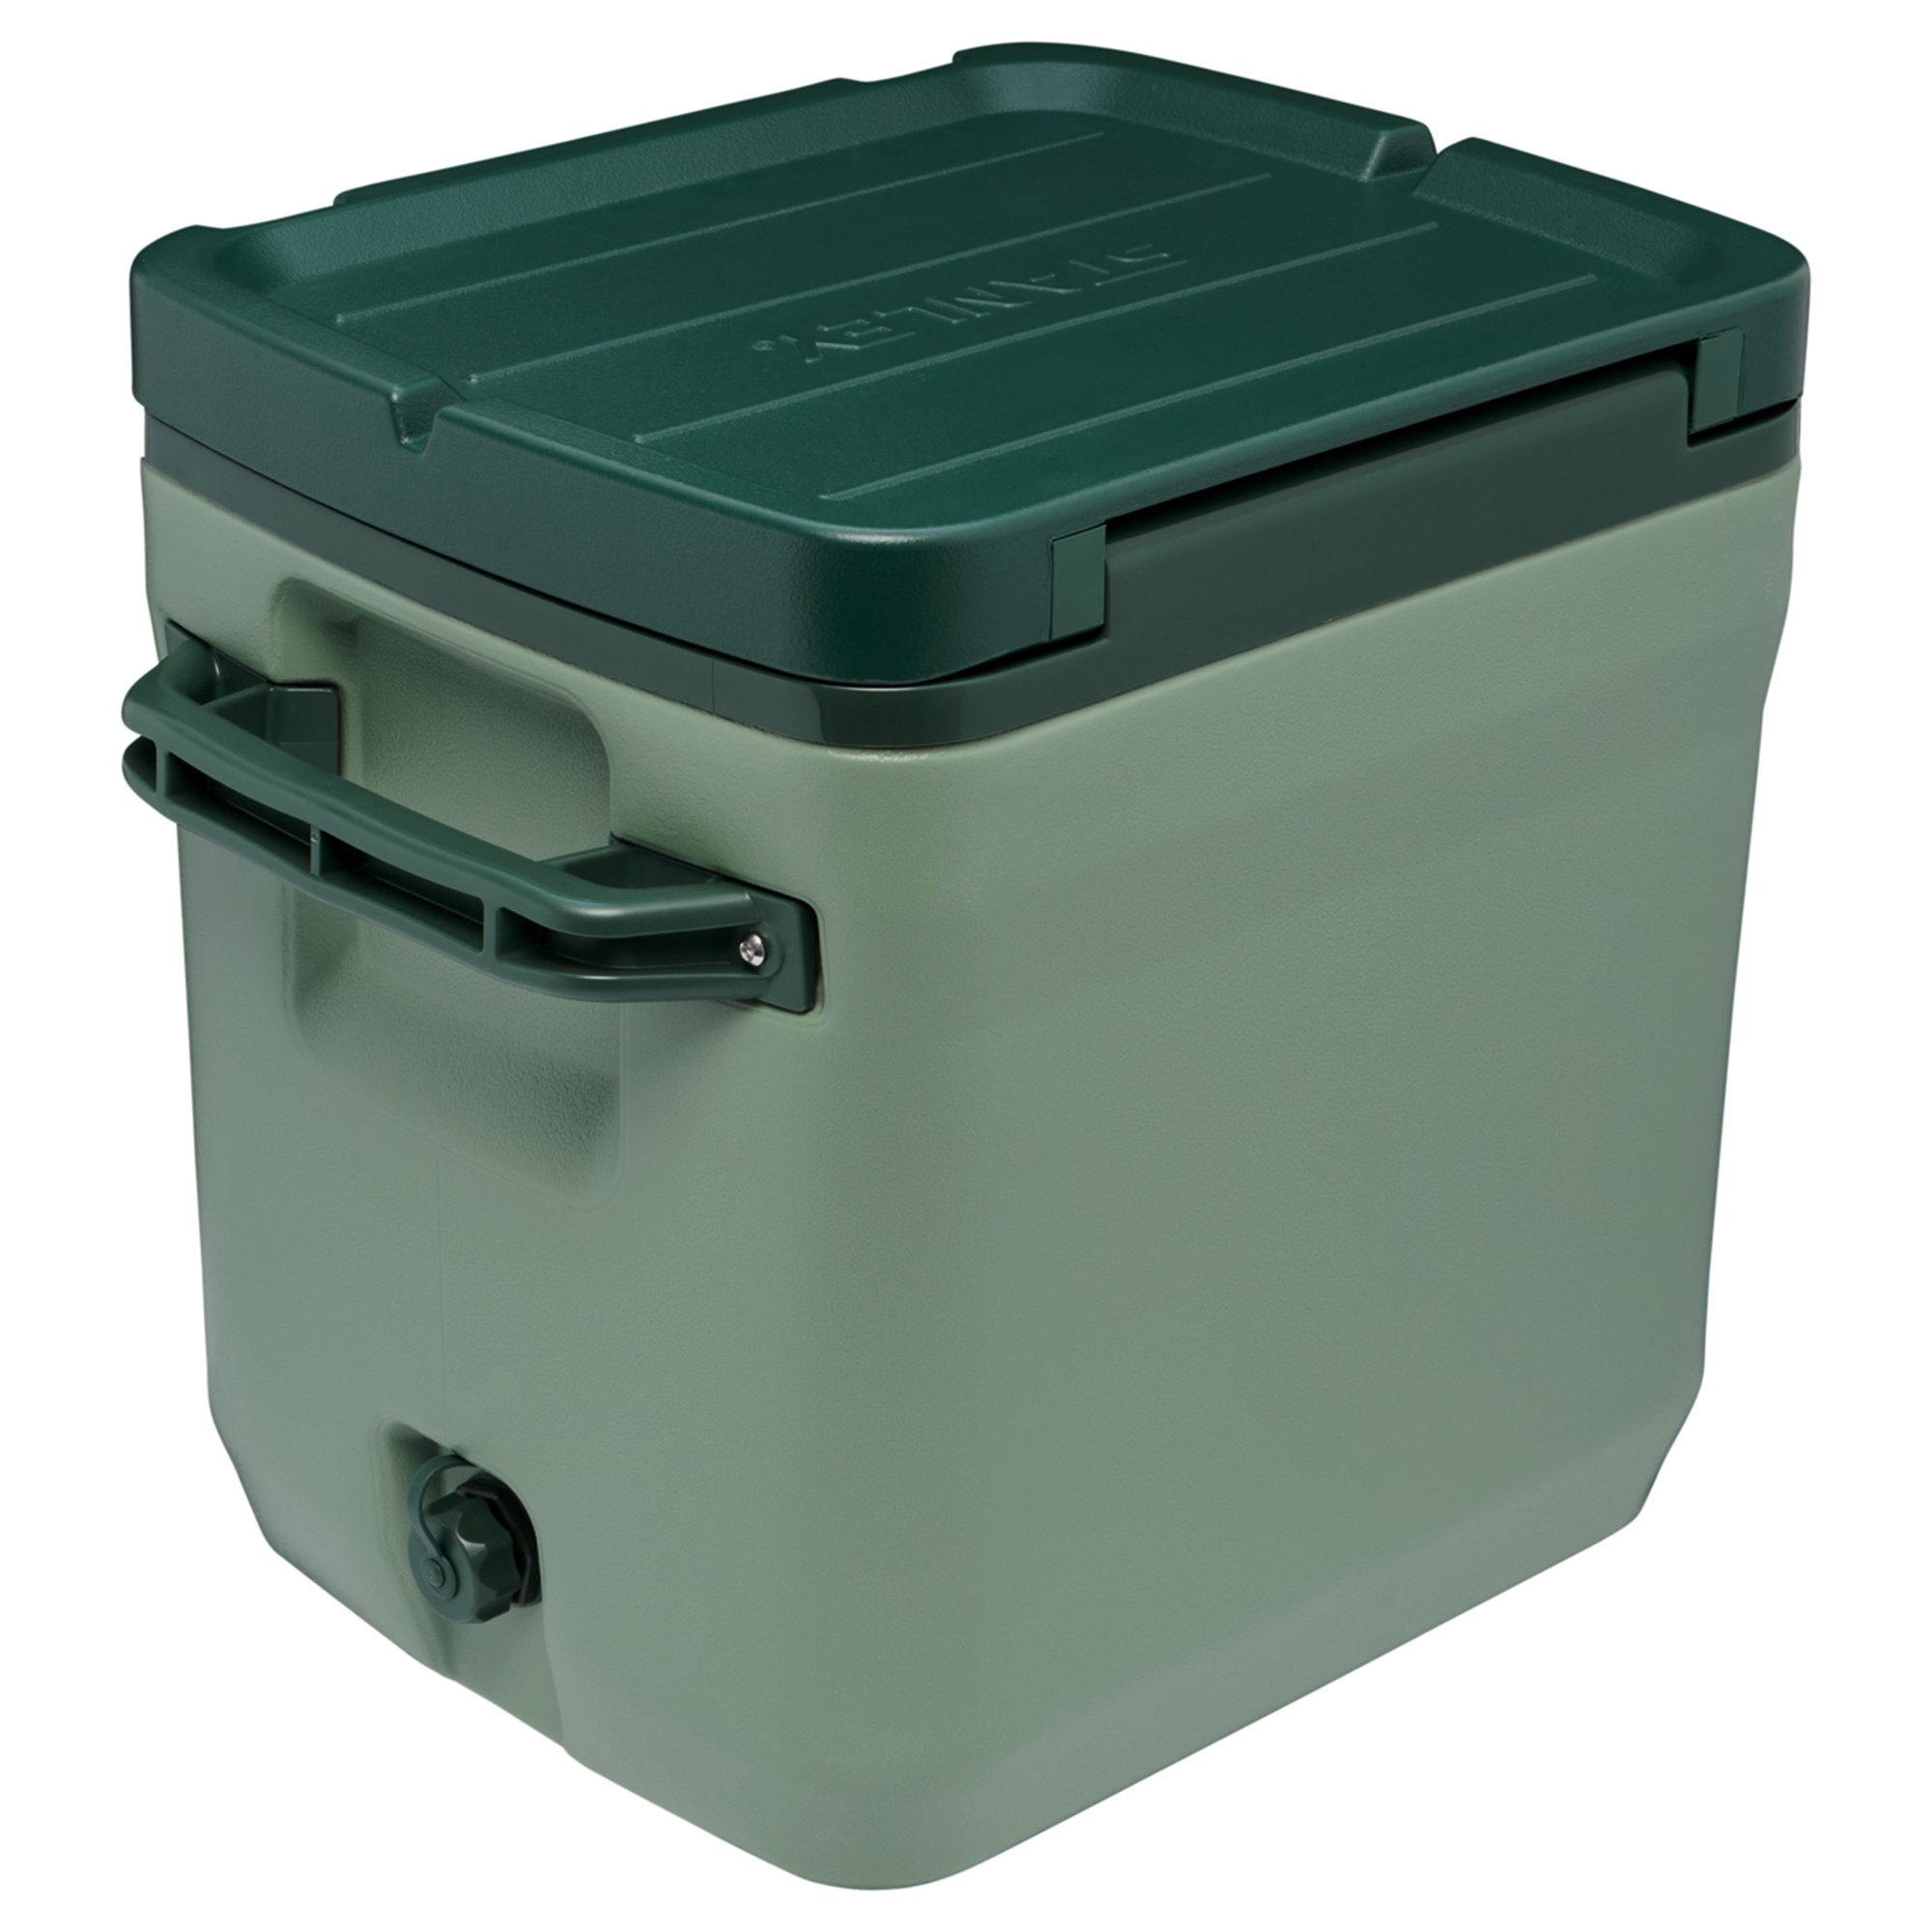 Stanley ColdForDays Outdoor Cooler kjøleboks 28.3 liter, stanley green Kul boks